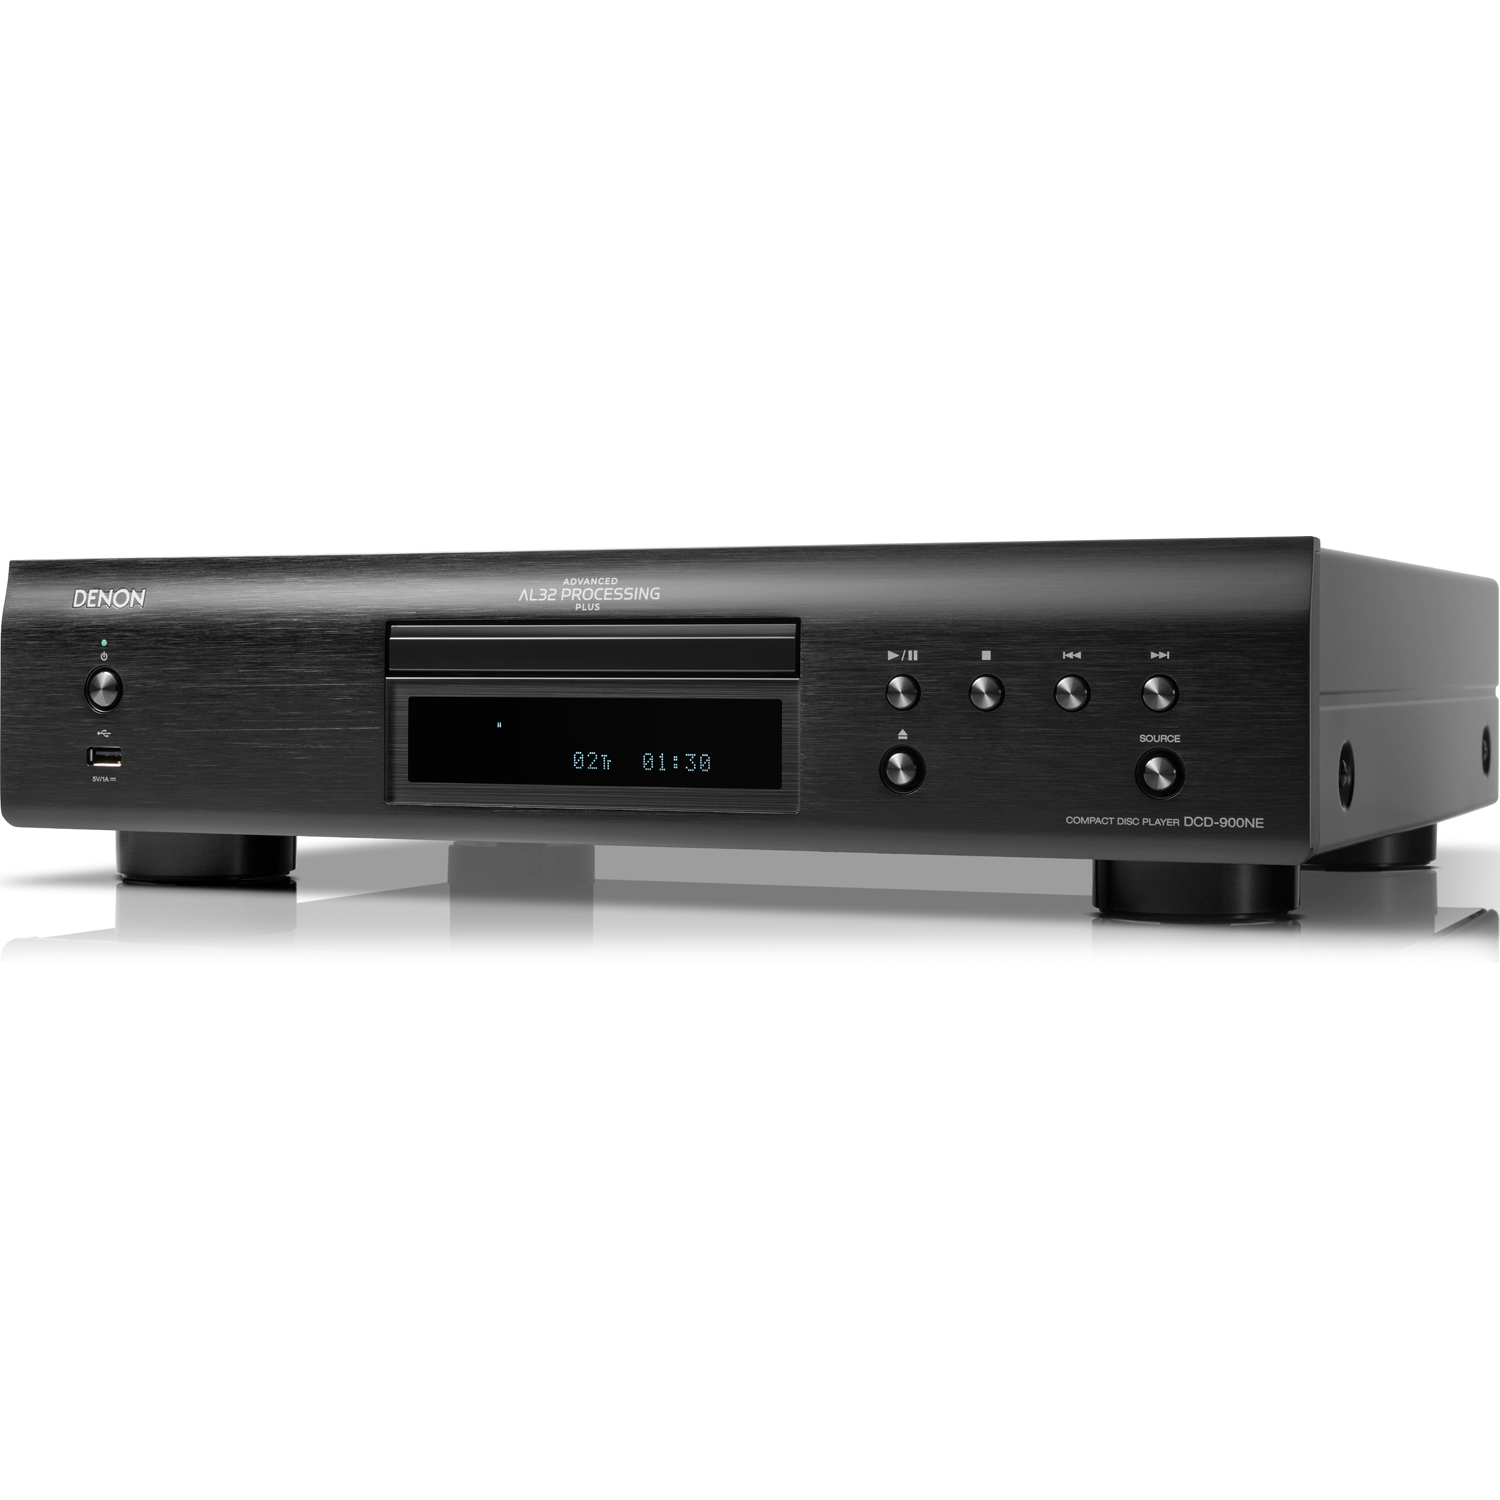 DENON DCD-900NE CD Player with Advanced AL32 Processing Plus